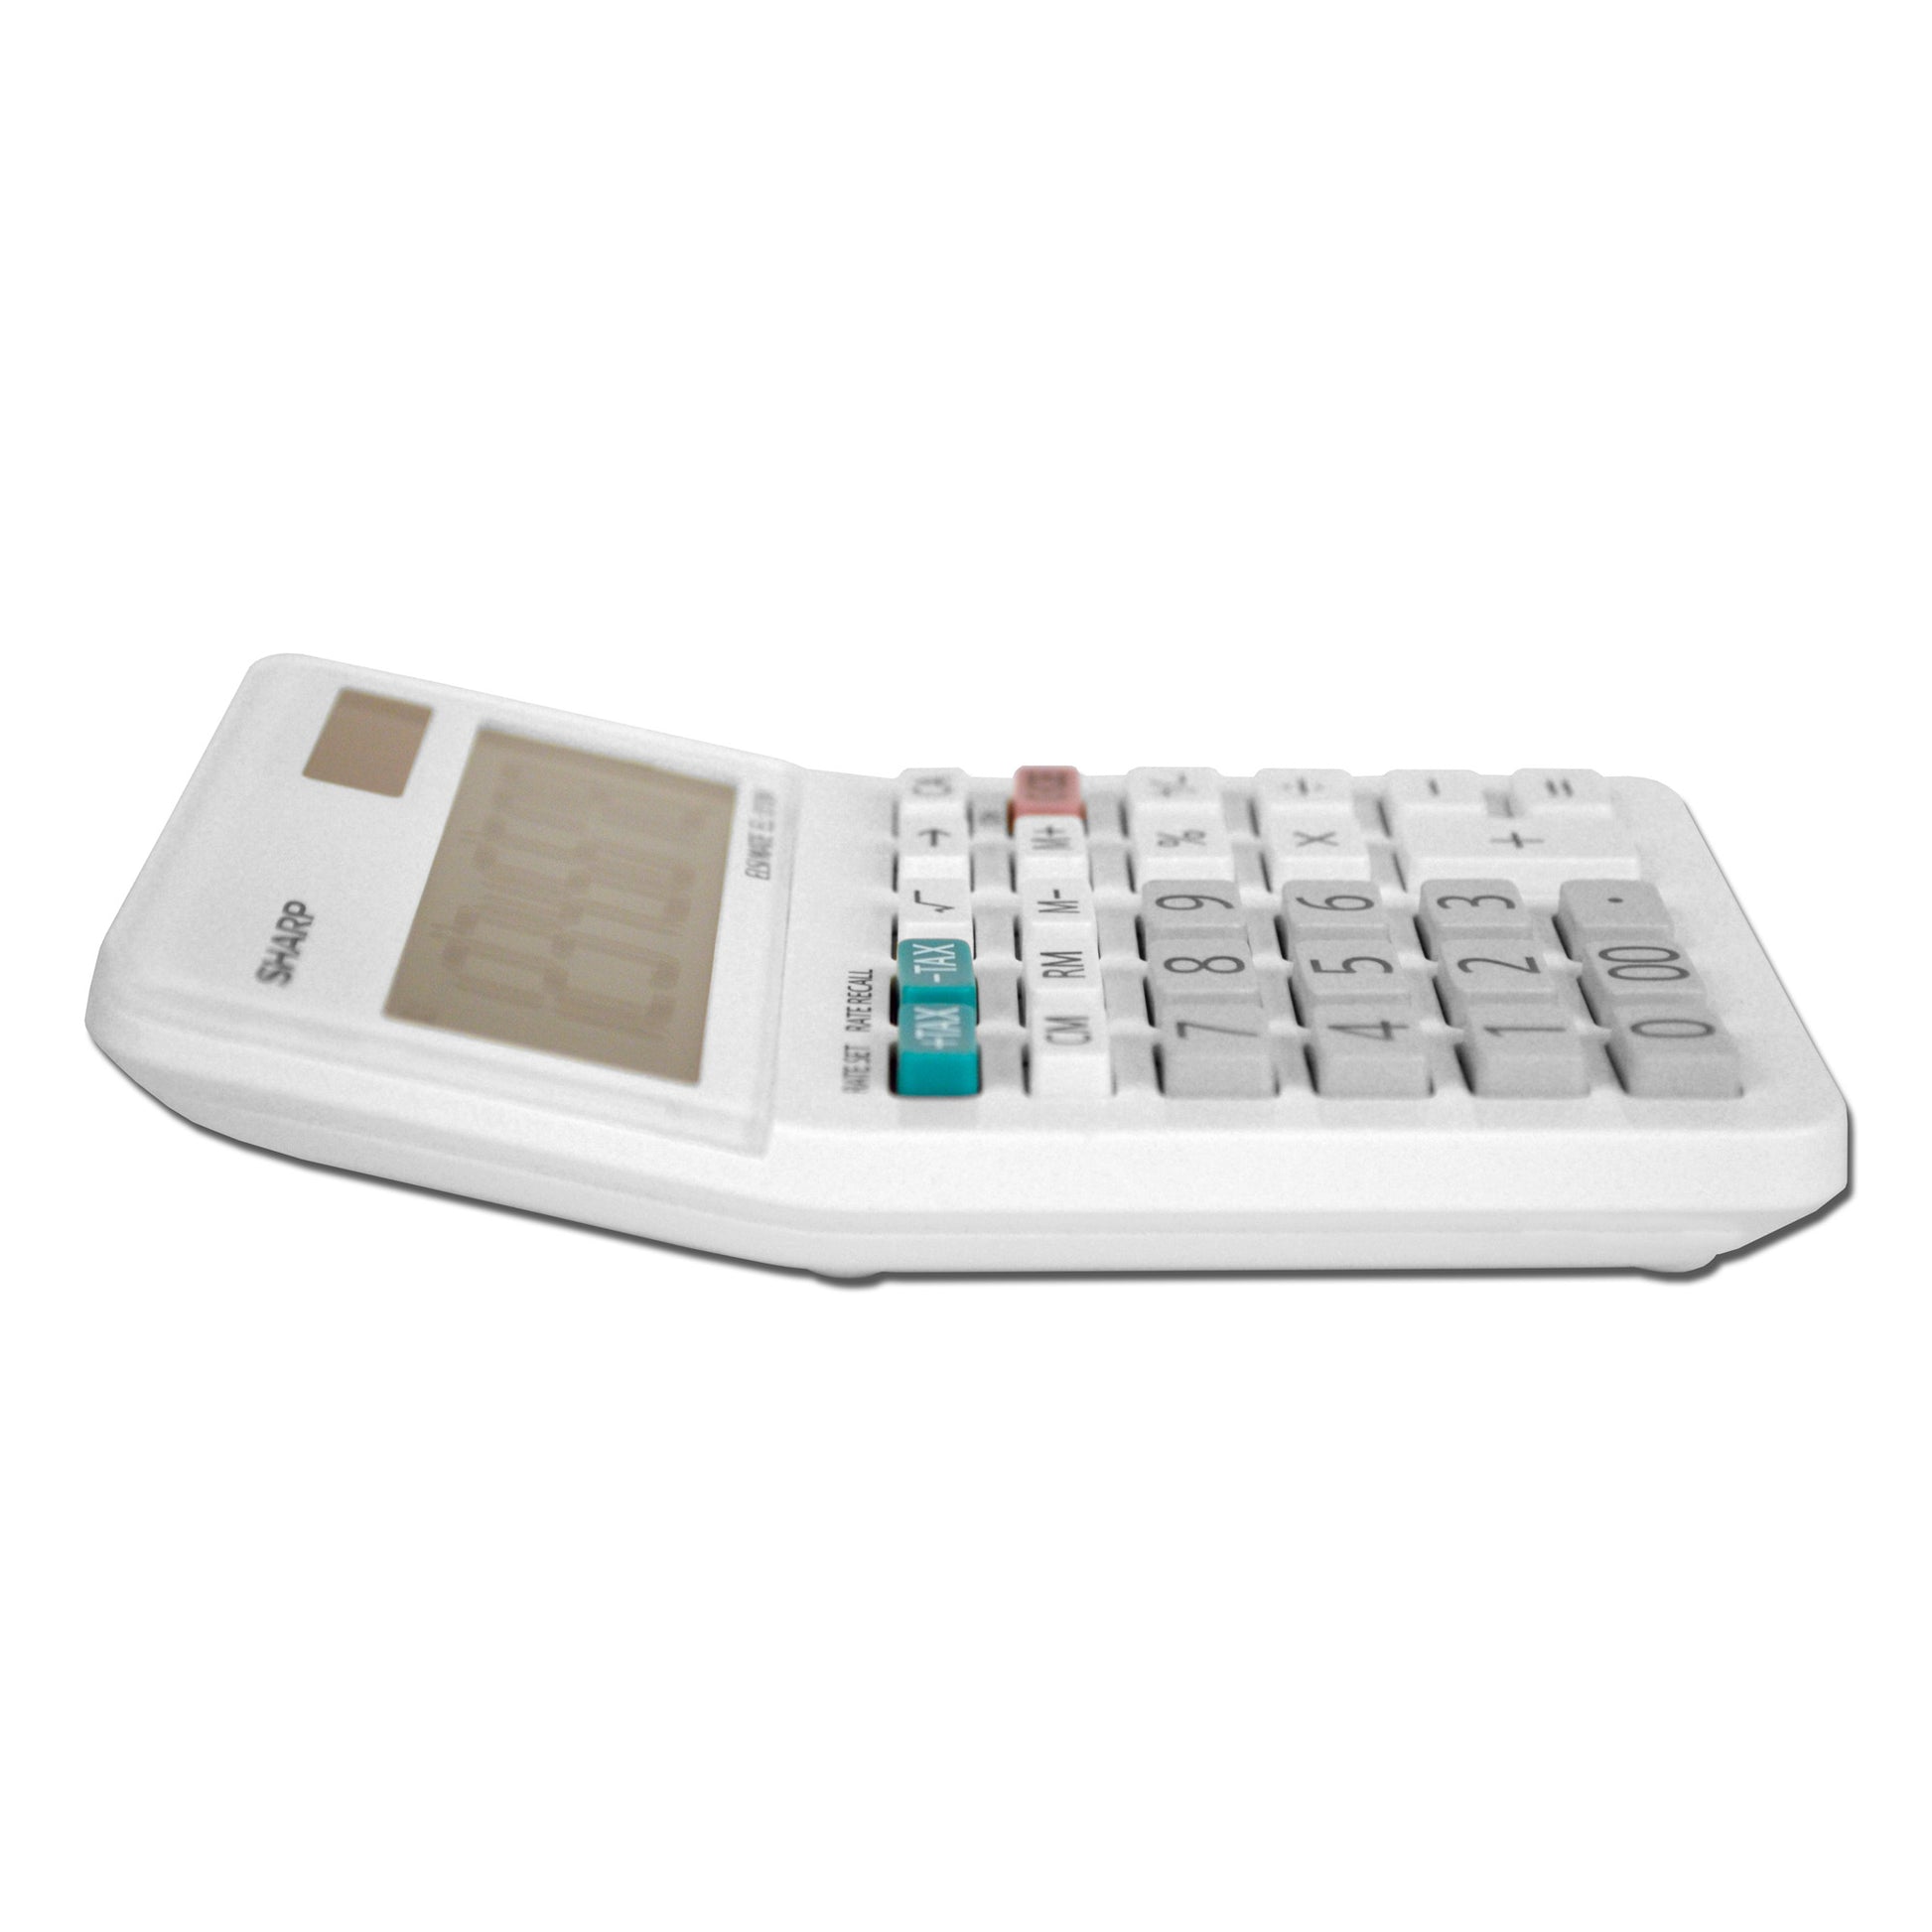 side view of white mini desktop calculator